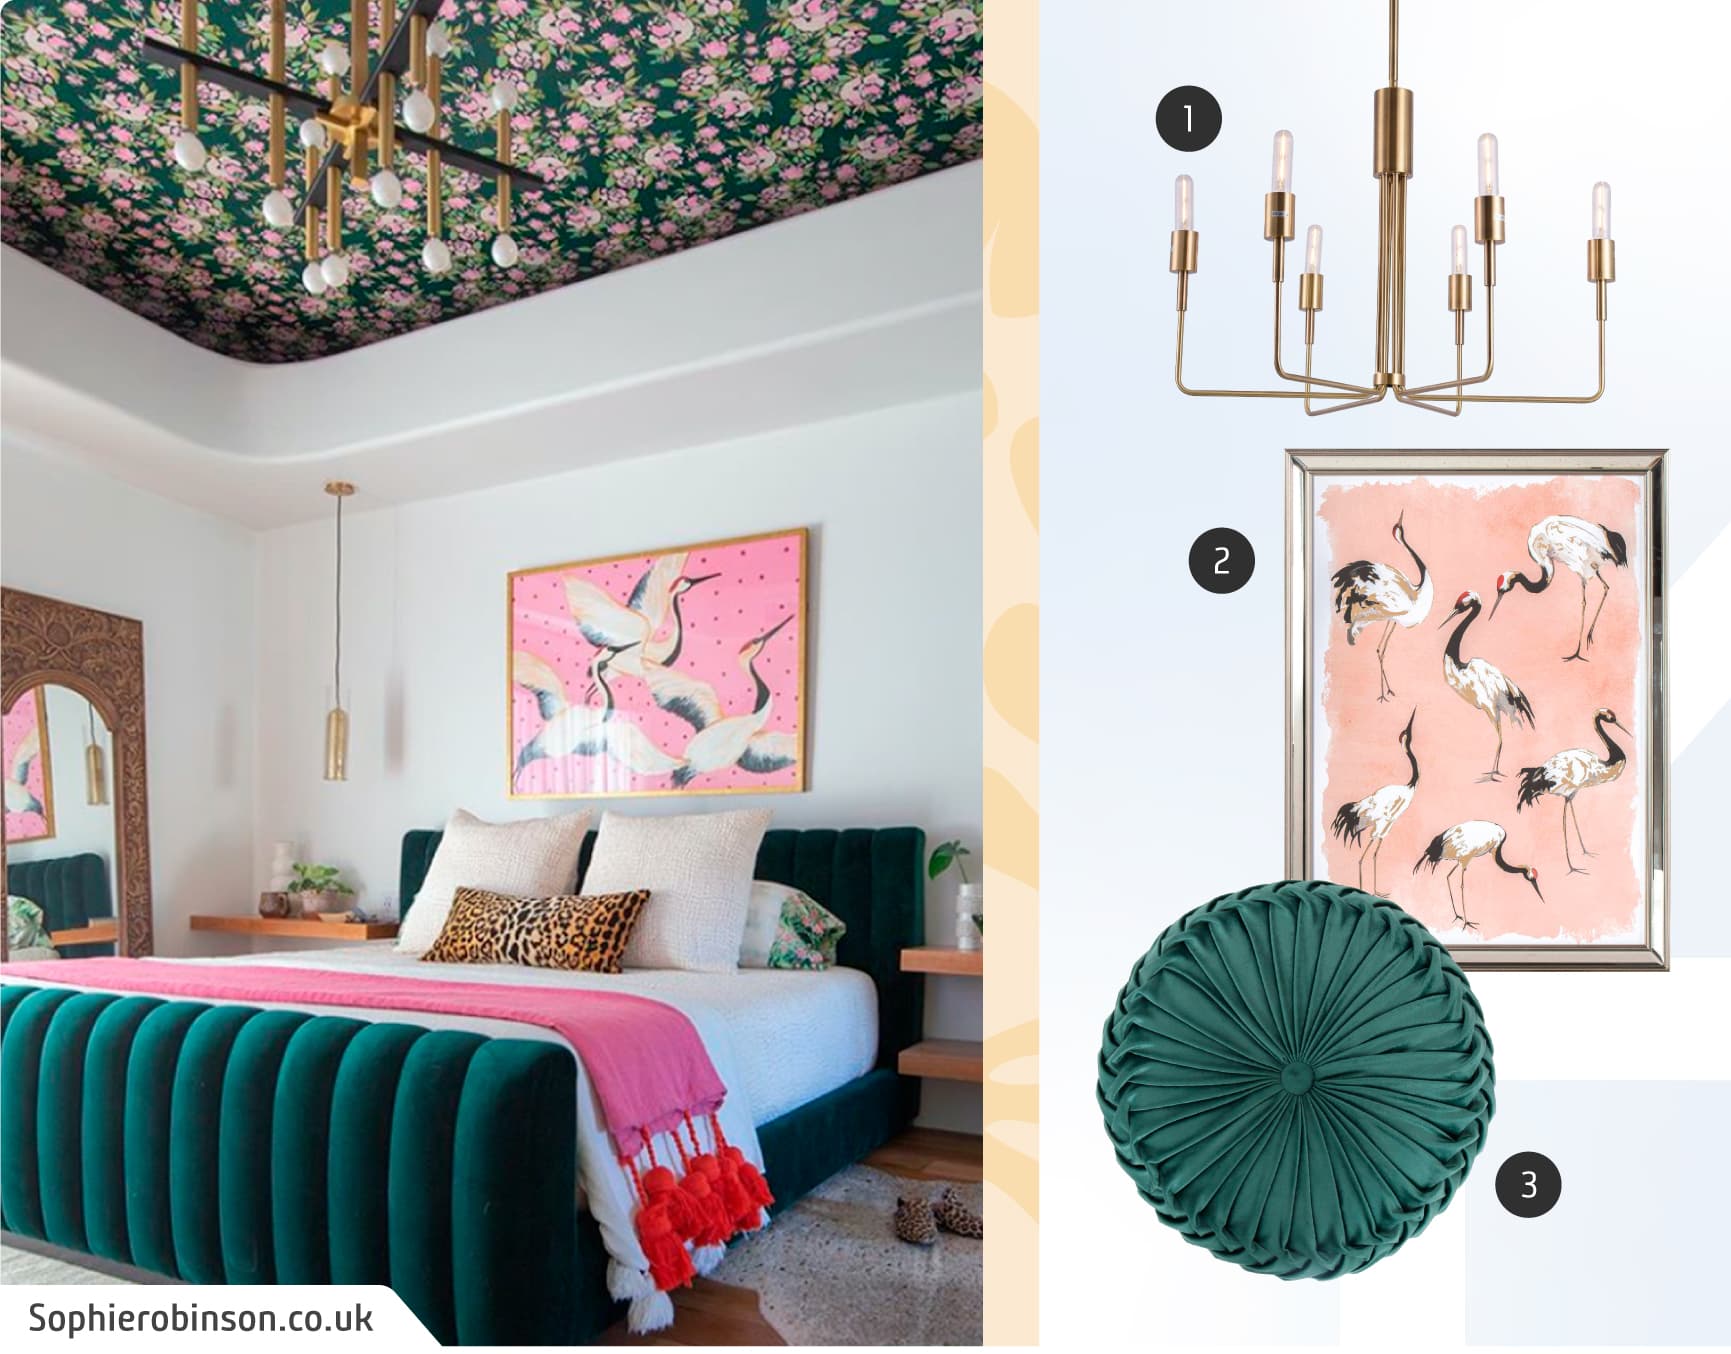 Moodboard de inspiración con una foto de un dormitorio maximalista con una cama de terciopelo verde oscuro y piecera rosada, papel mural en el techo y un cuadro con aves; y junto a ella, una lámpara colgante dorada, un cojín verde y un cuadro con aves.